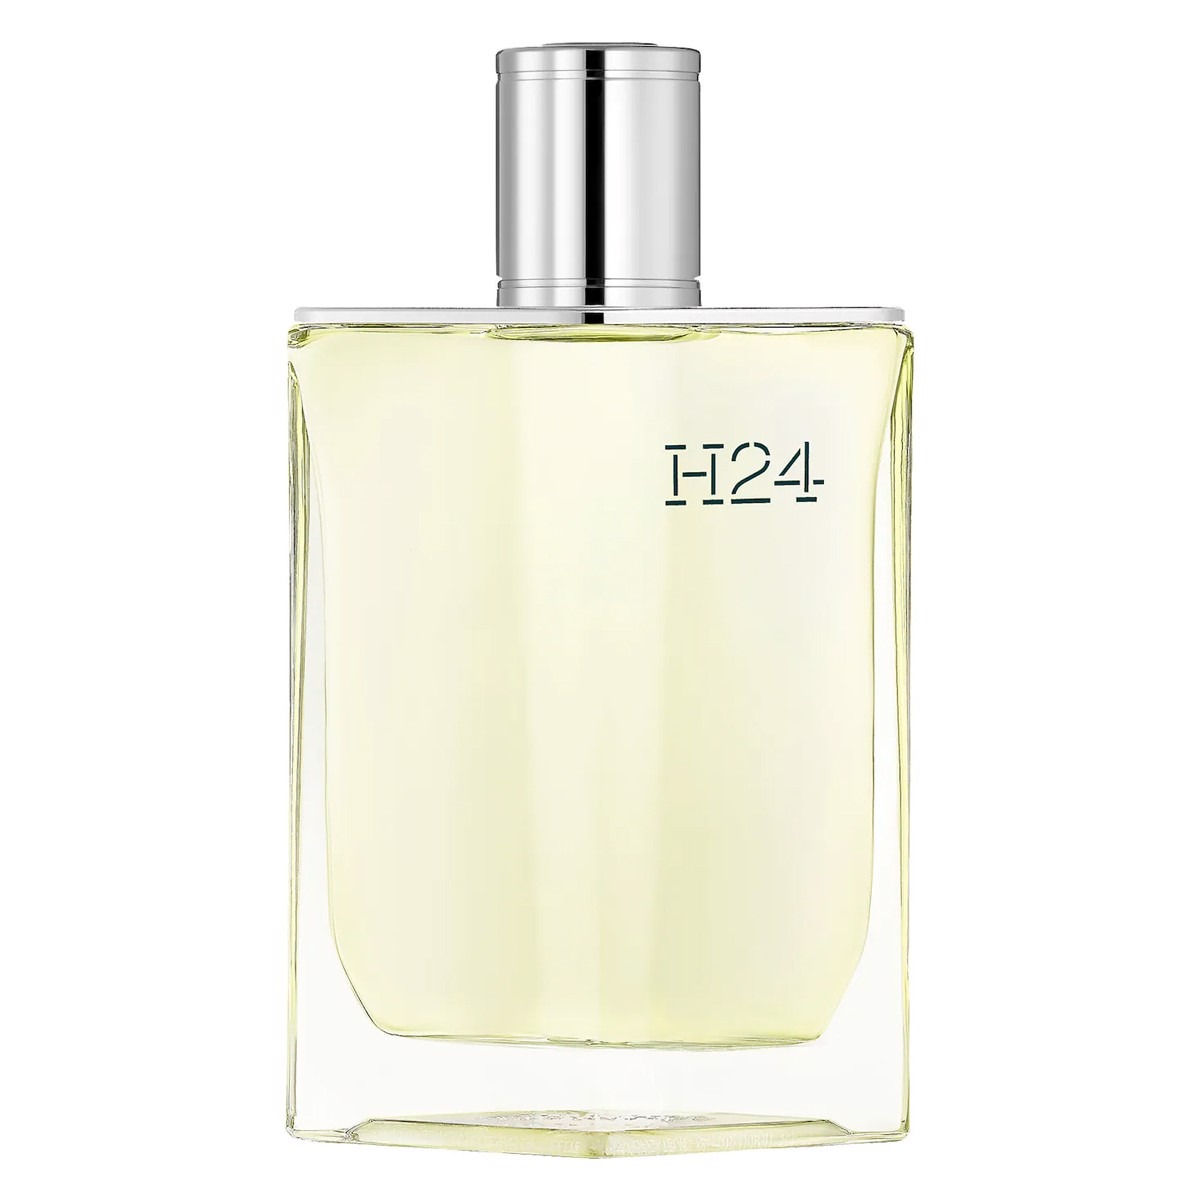 Nước hoa Hermès H24